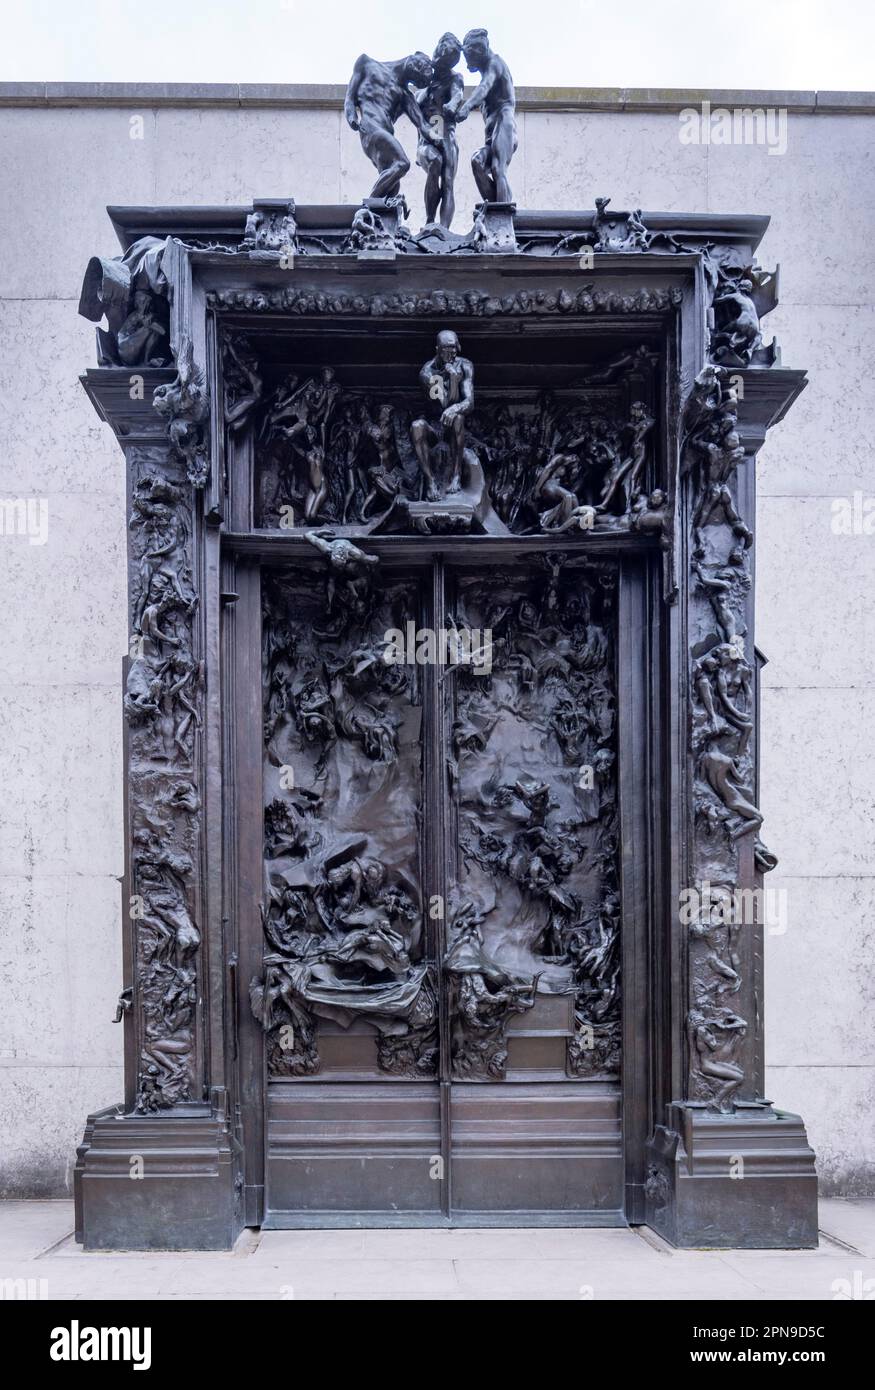 Les portes de l'Enfer (la porte de l'Enfer), Musée Rodin, Prius, France Banque D'Images